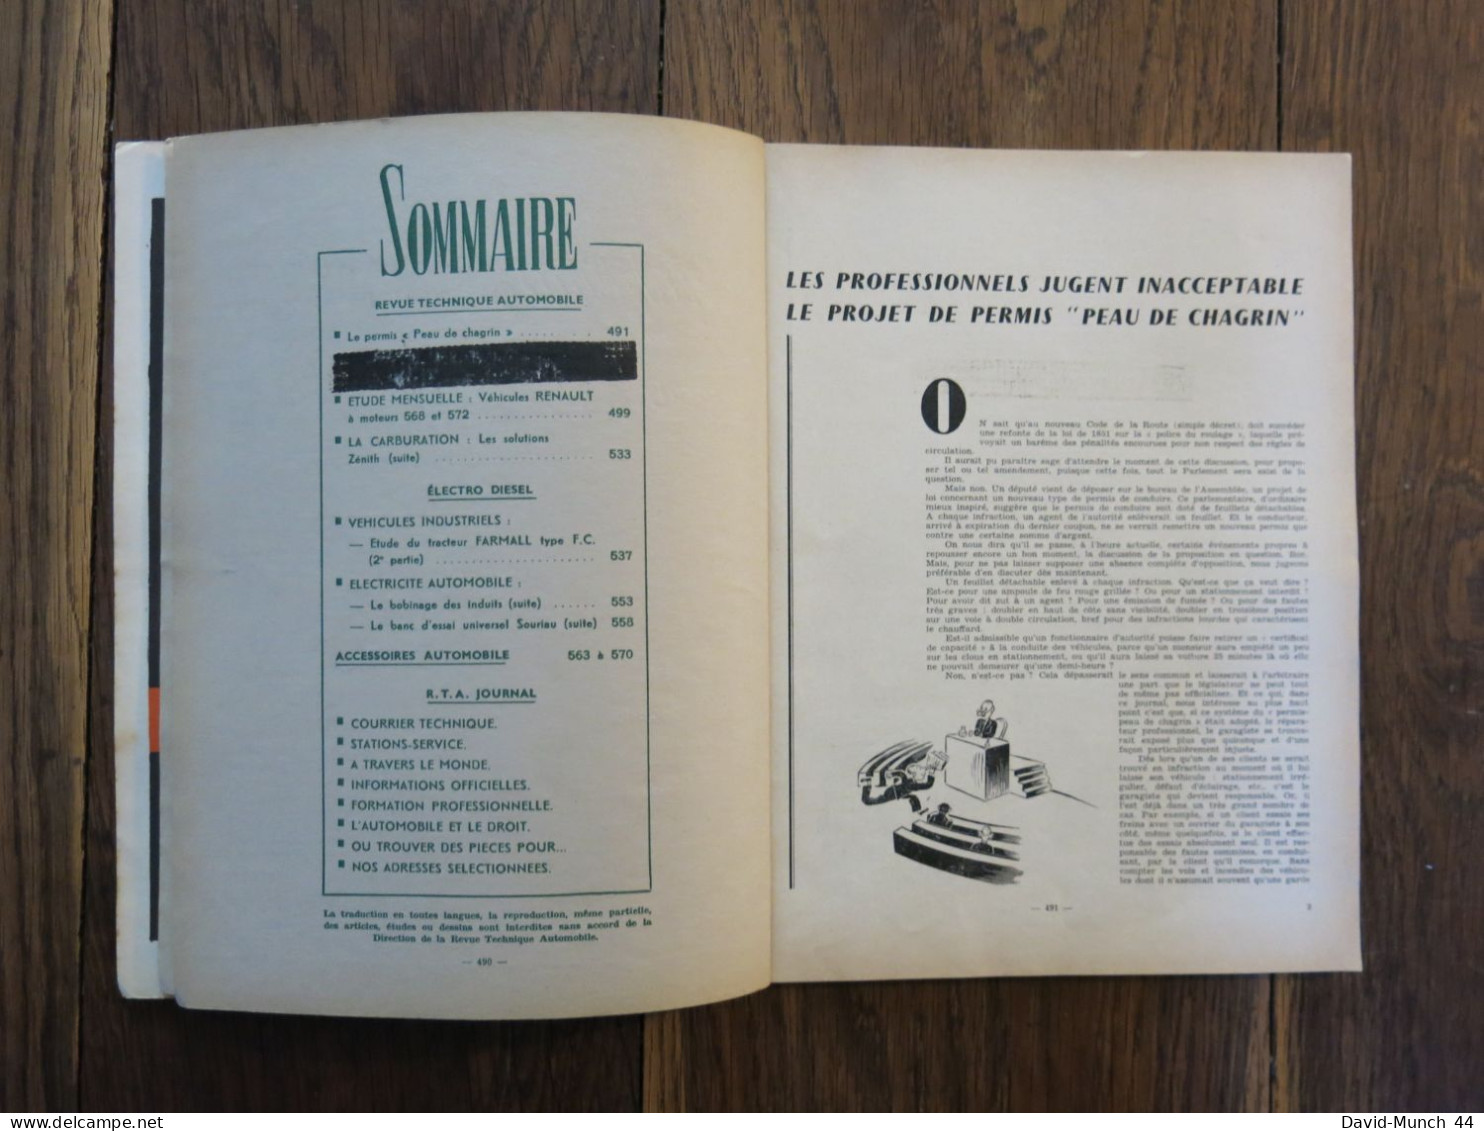 Revue Technique Automobile # 99. Juillet 1954 - Auto/Motor